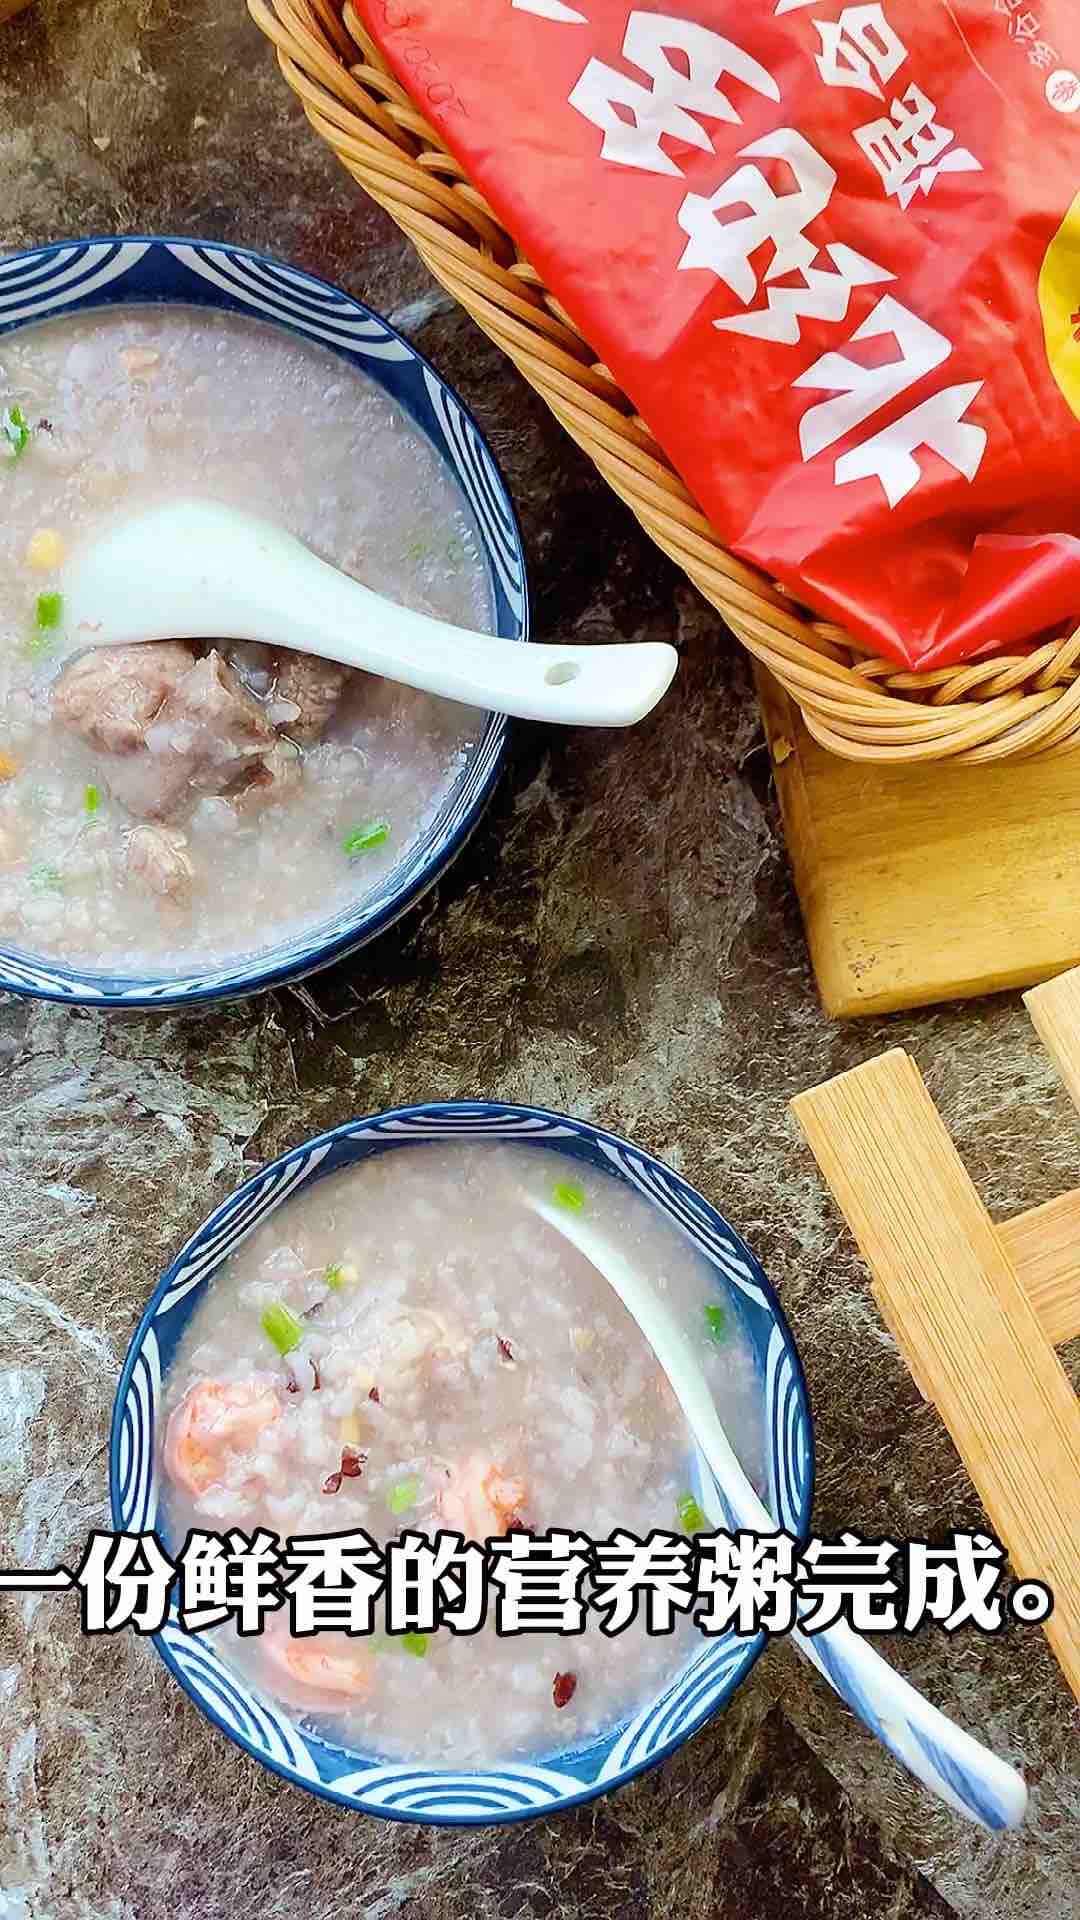 Shrimp Pork Congee recipe